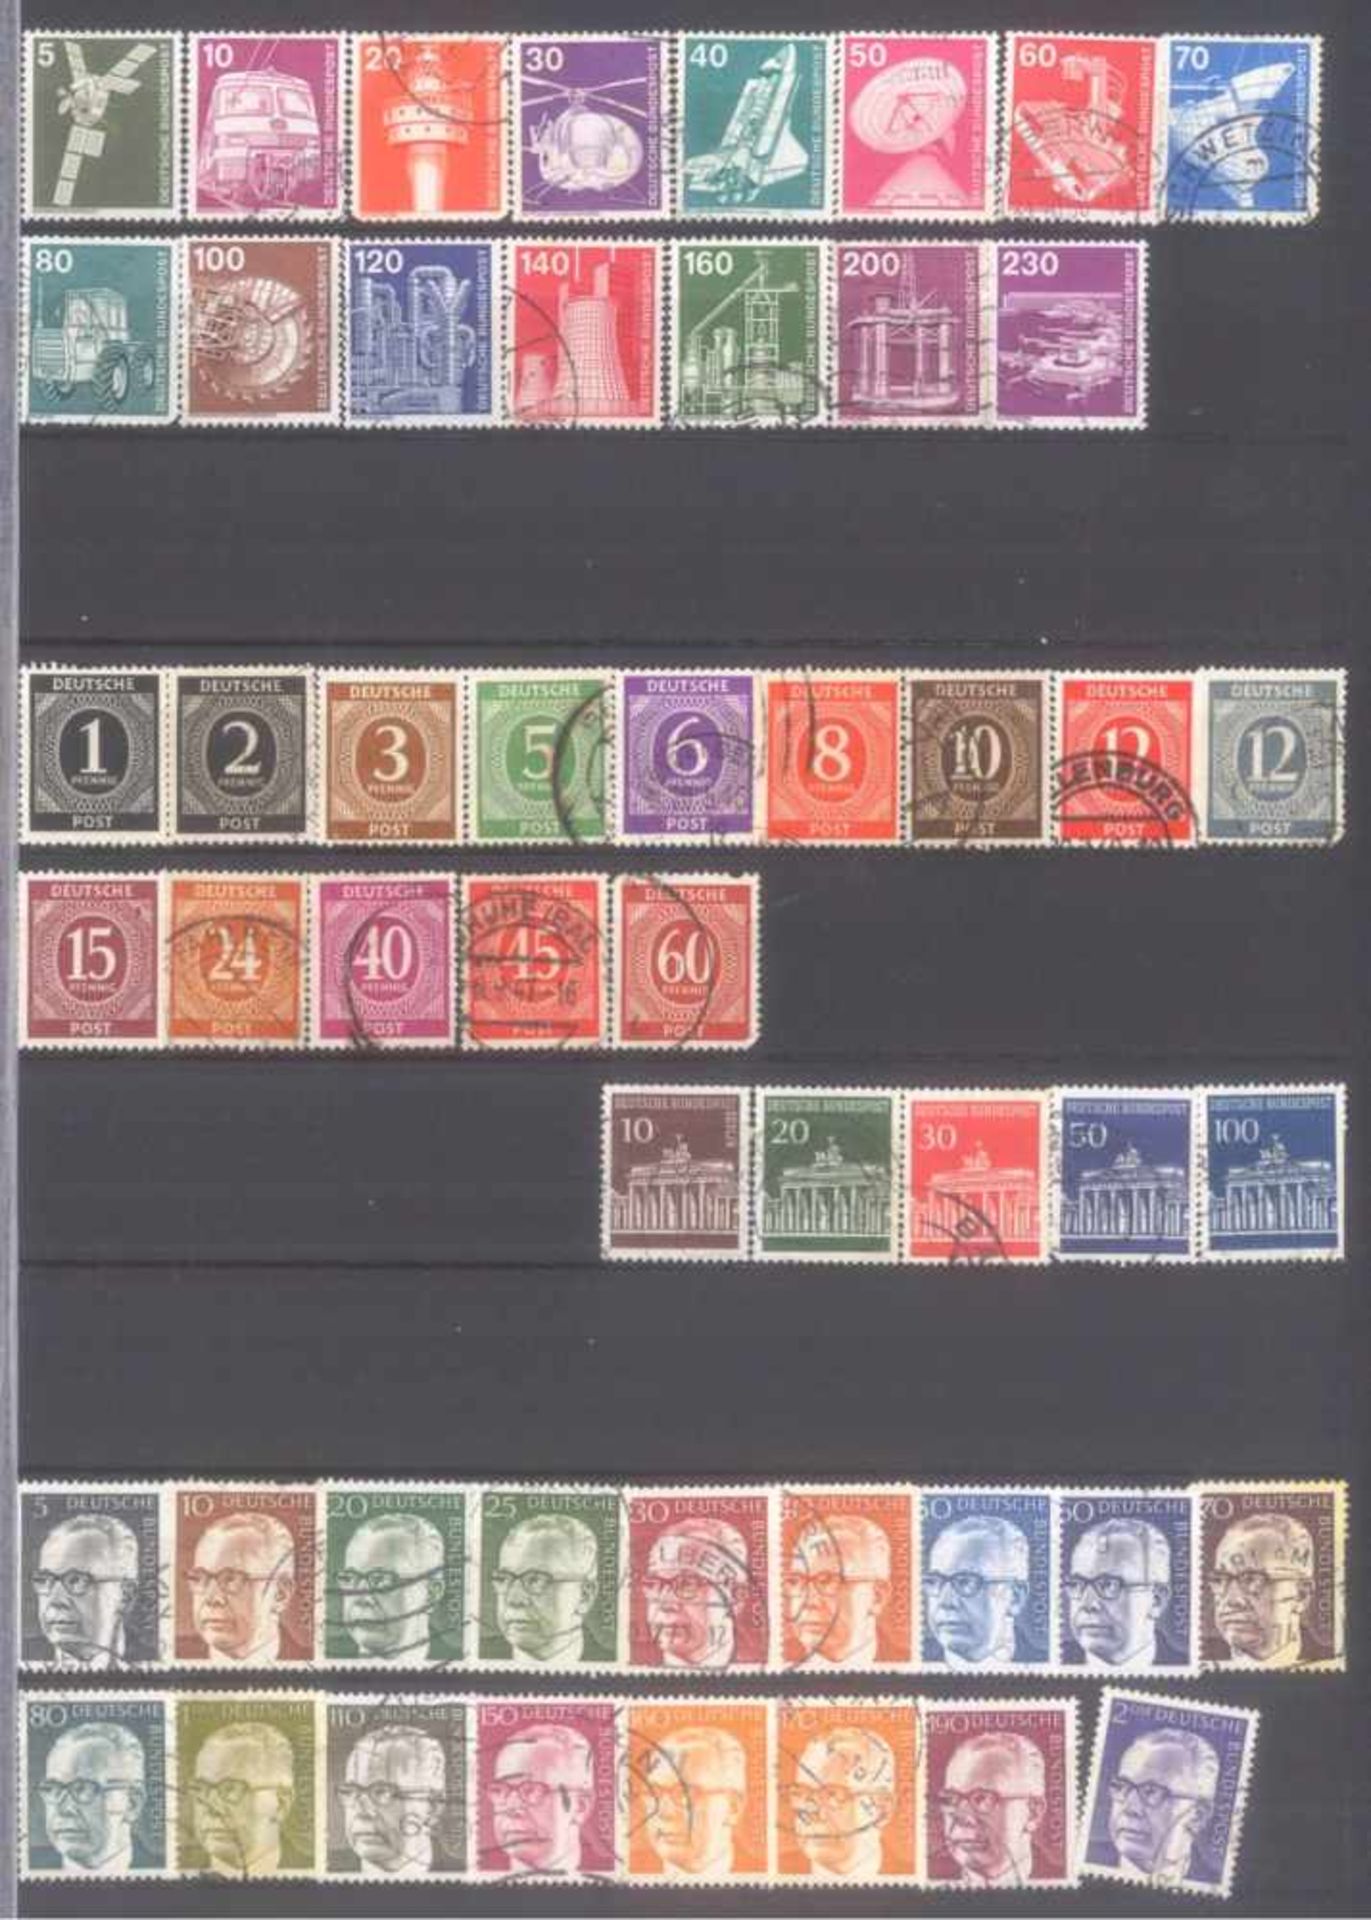 Kleiner Briefmarkennachlass Alle WeltIn 5 Steckalben, gestempelte Marken der BRD, Berlin, etwas - Bild 7 aus 12